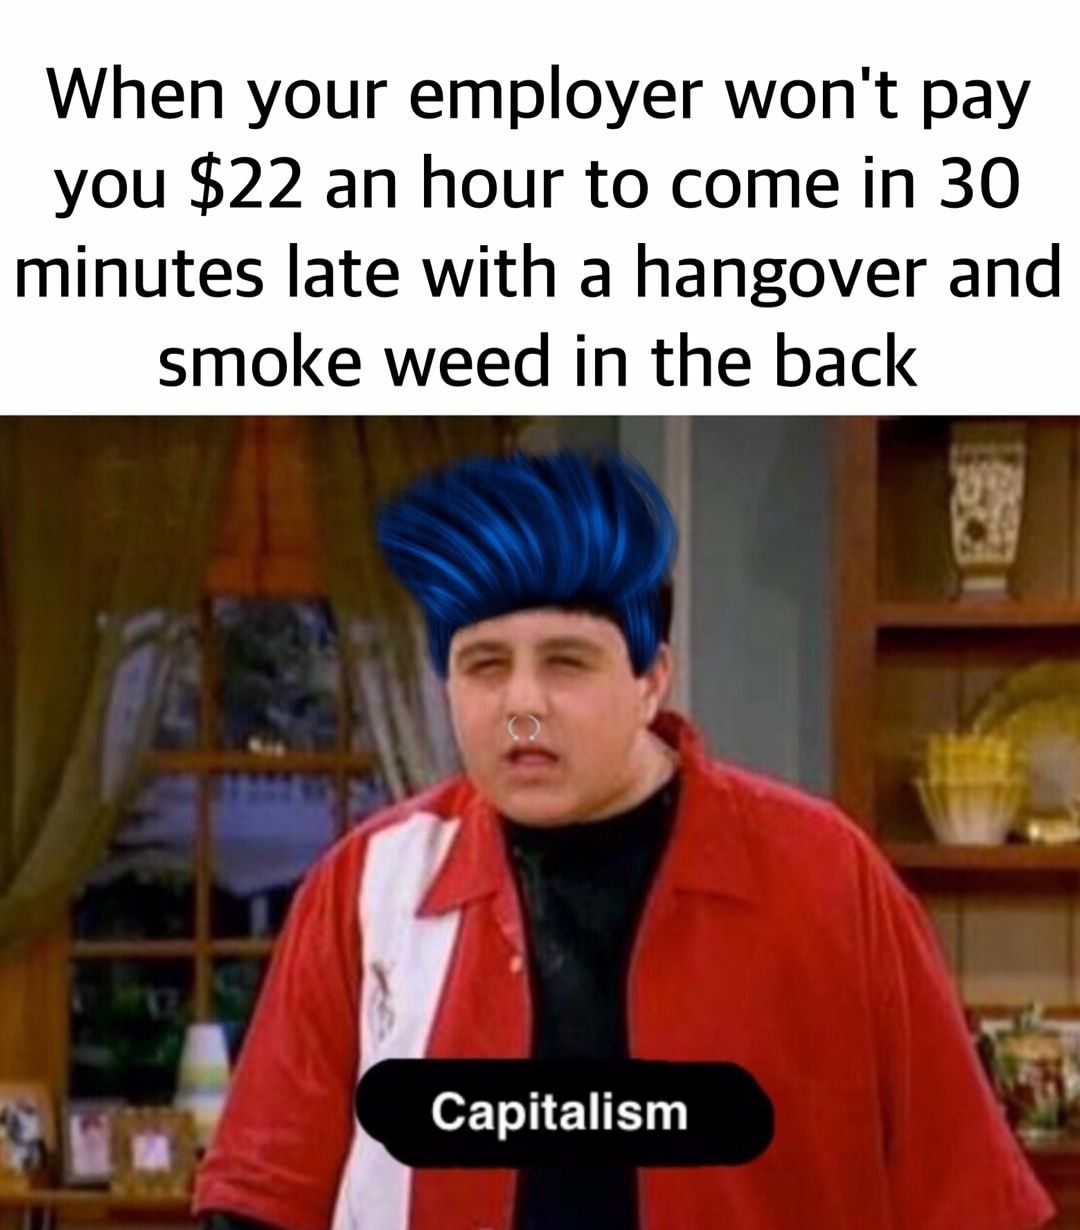 Capitalism